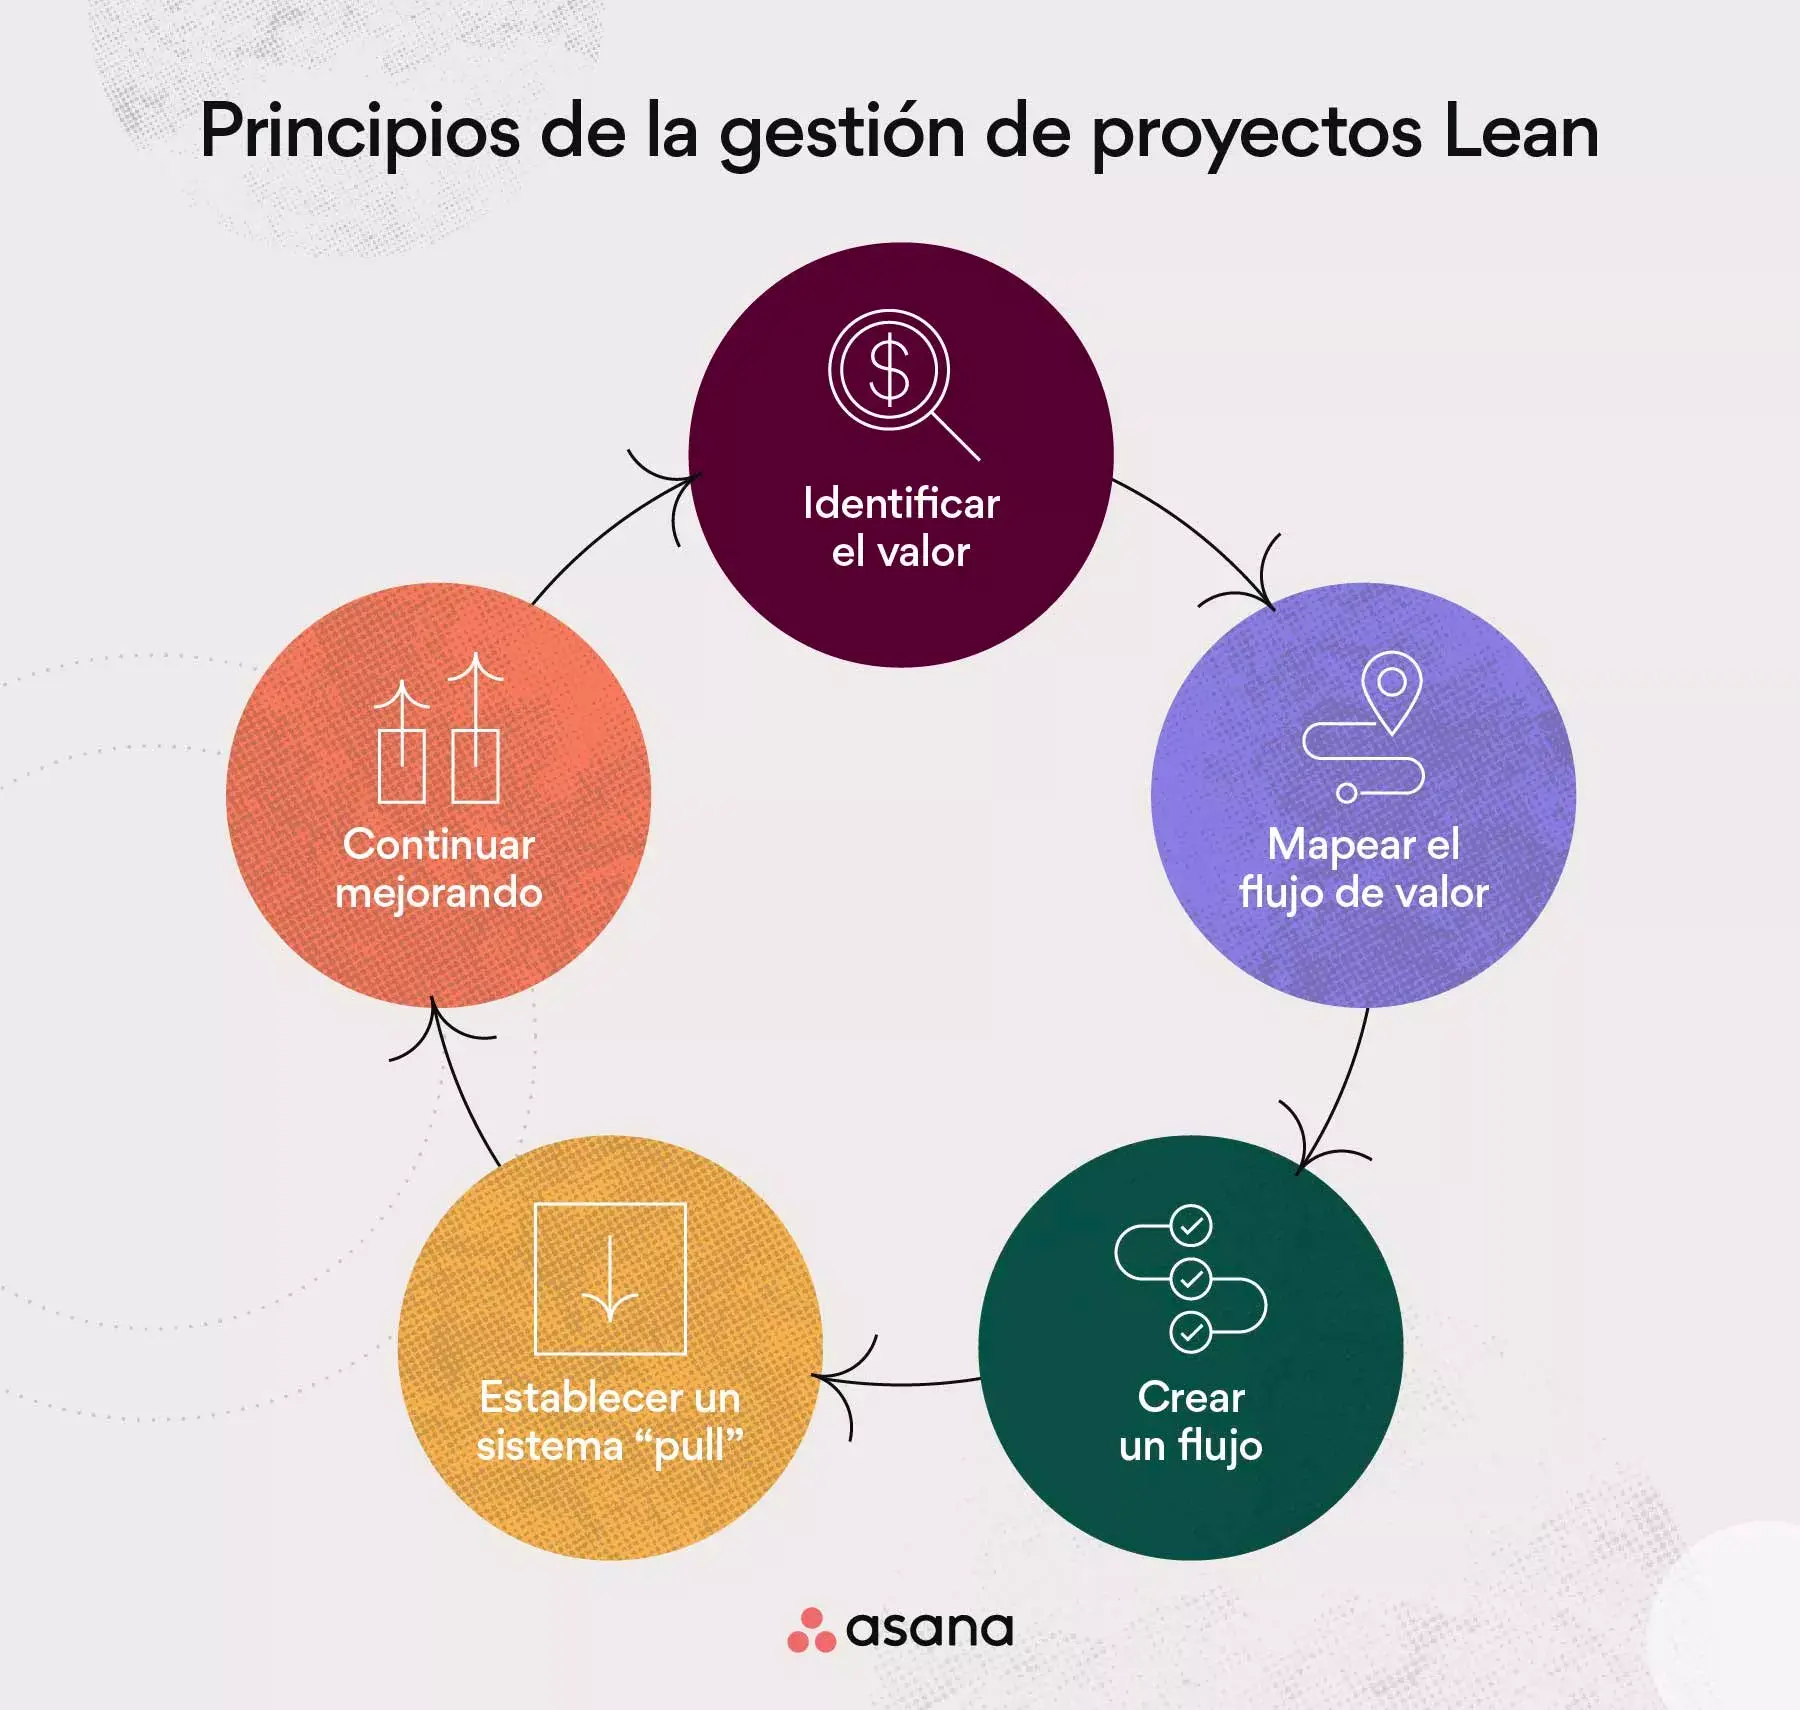 Principios de la gestión de proyectos Lean